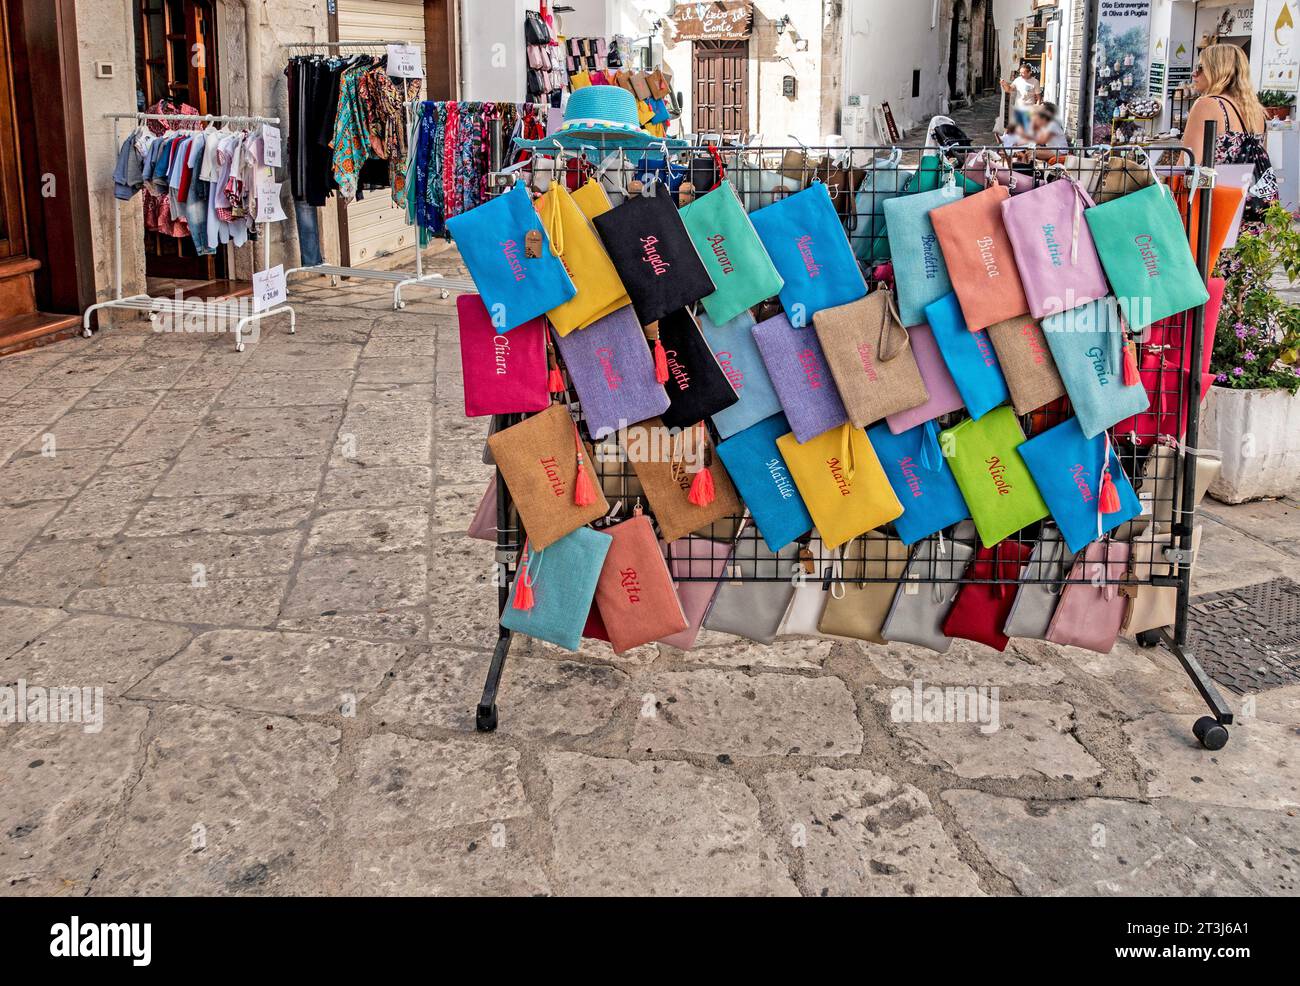 Un negozio di abbigliamento femminile a Ostuni, Italia, con una colorata esposizione di accessori di abbigliamento. Foto Stock